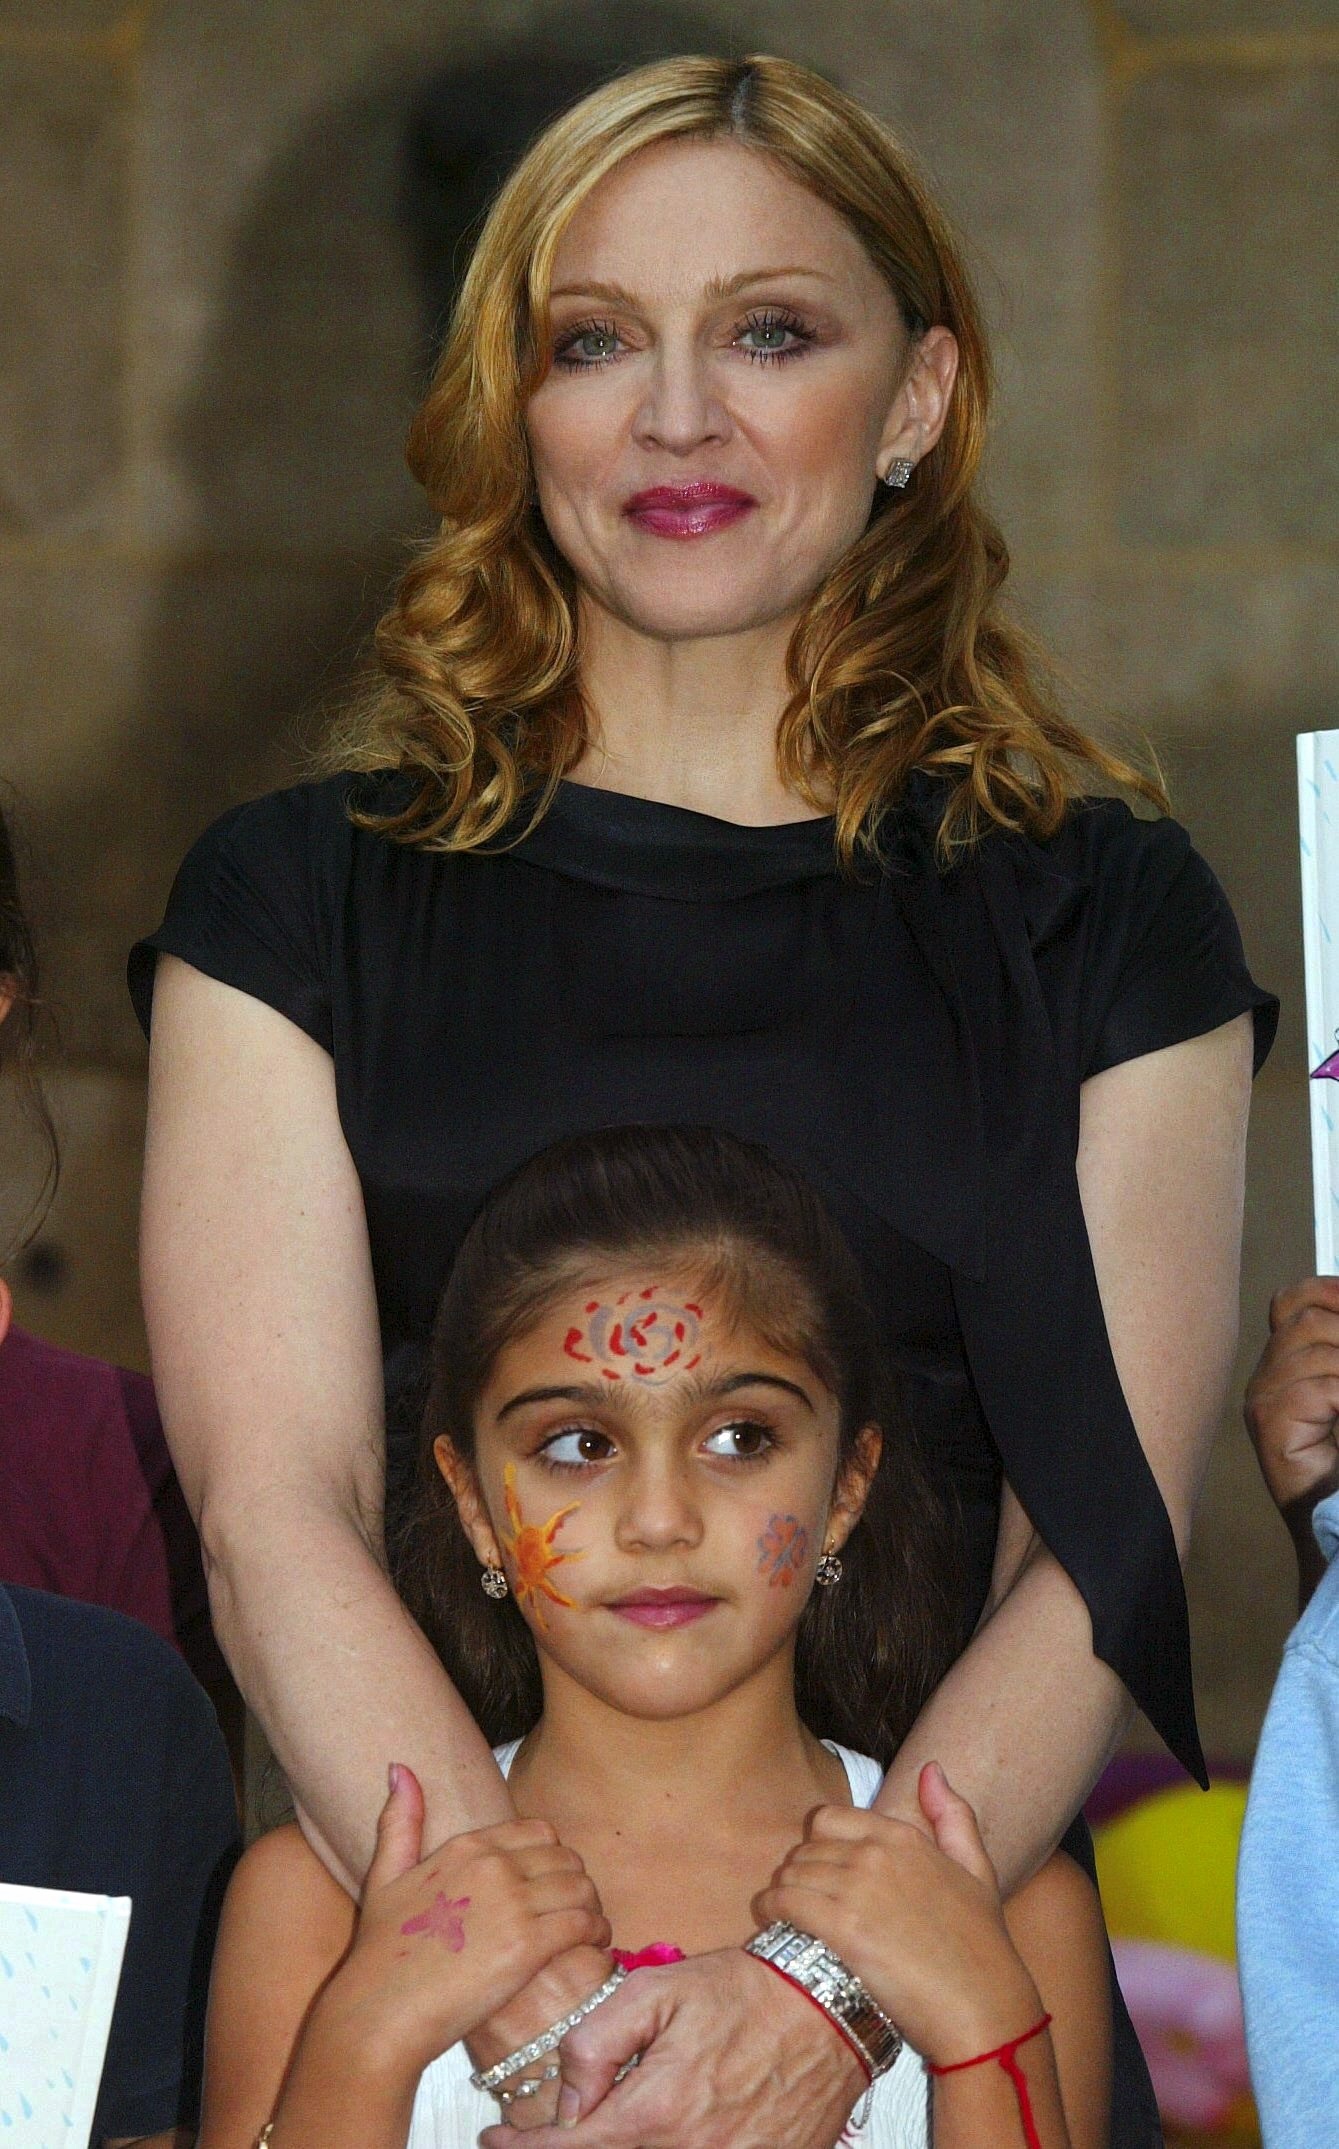 Madonna avec sa fille Lourdes "Lola" Leon le 15 septembre 2003 à Paris, France | Source : Getty Images